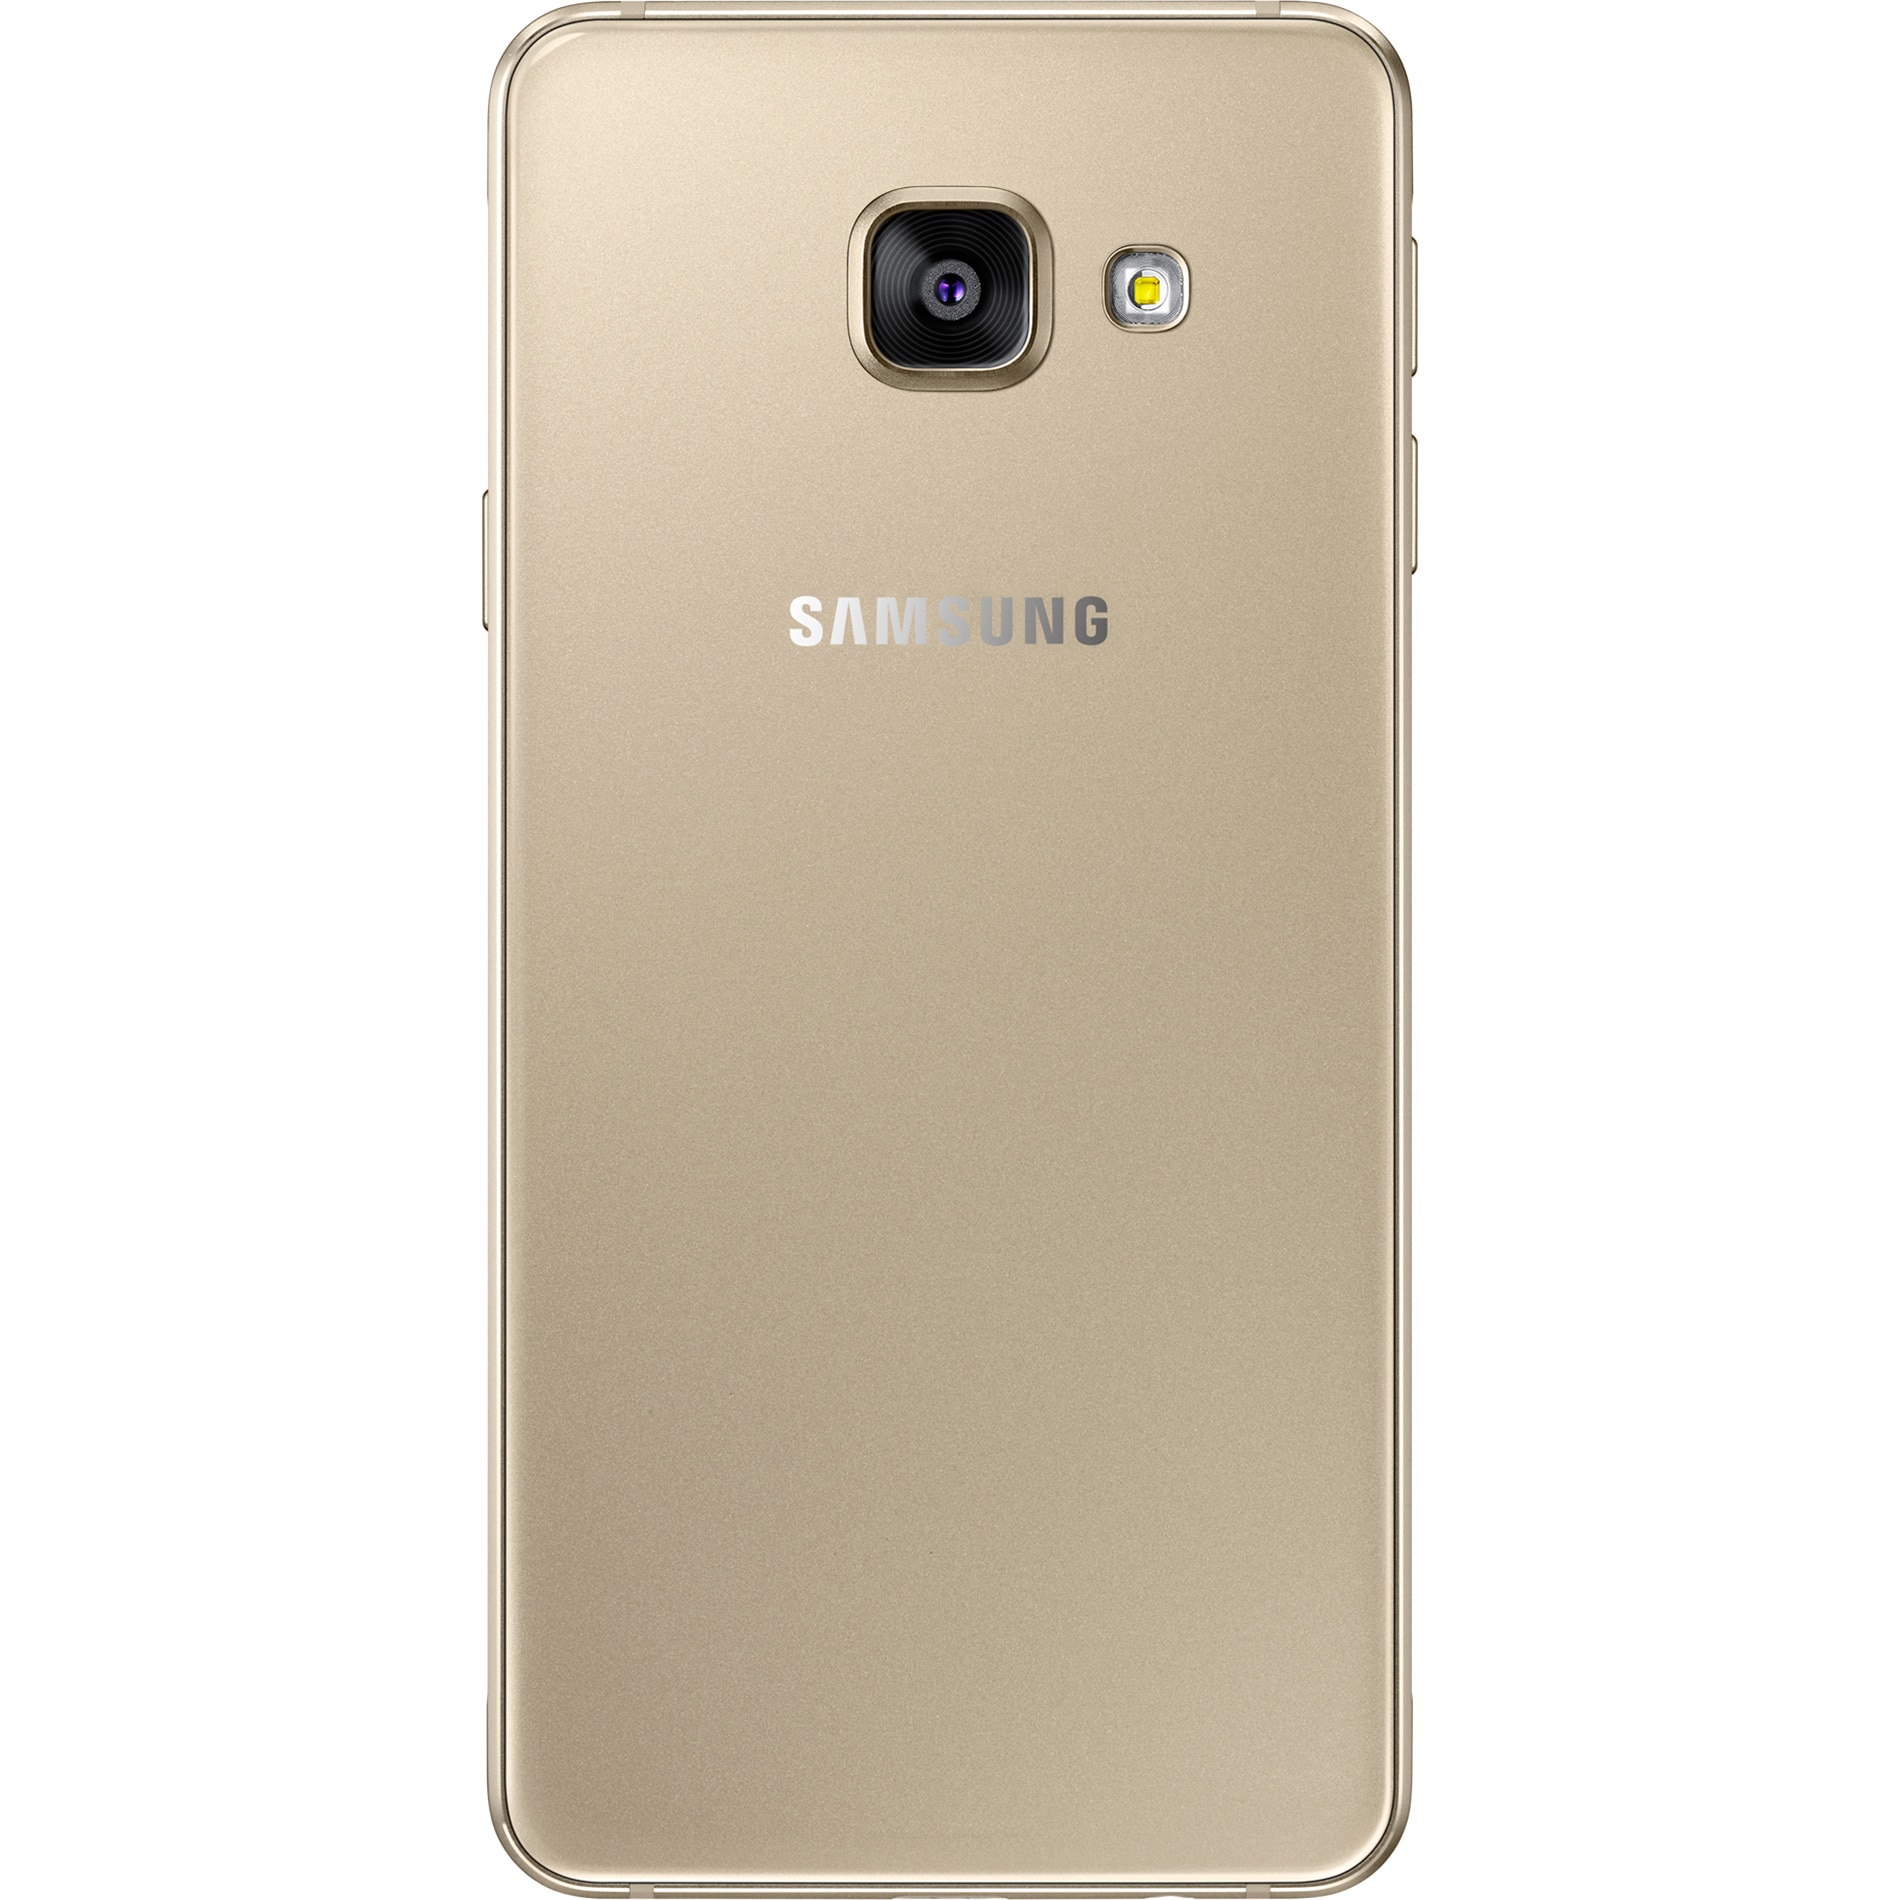 Galaxy gold 3. Samsung Galaxy a3 2016. Смартфон Samsung Galaxy a5 2016. Samsung Galaxy a5 (2016) SM-a510f. Samsung Galaxy a7 2016 Gold.